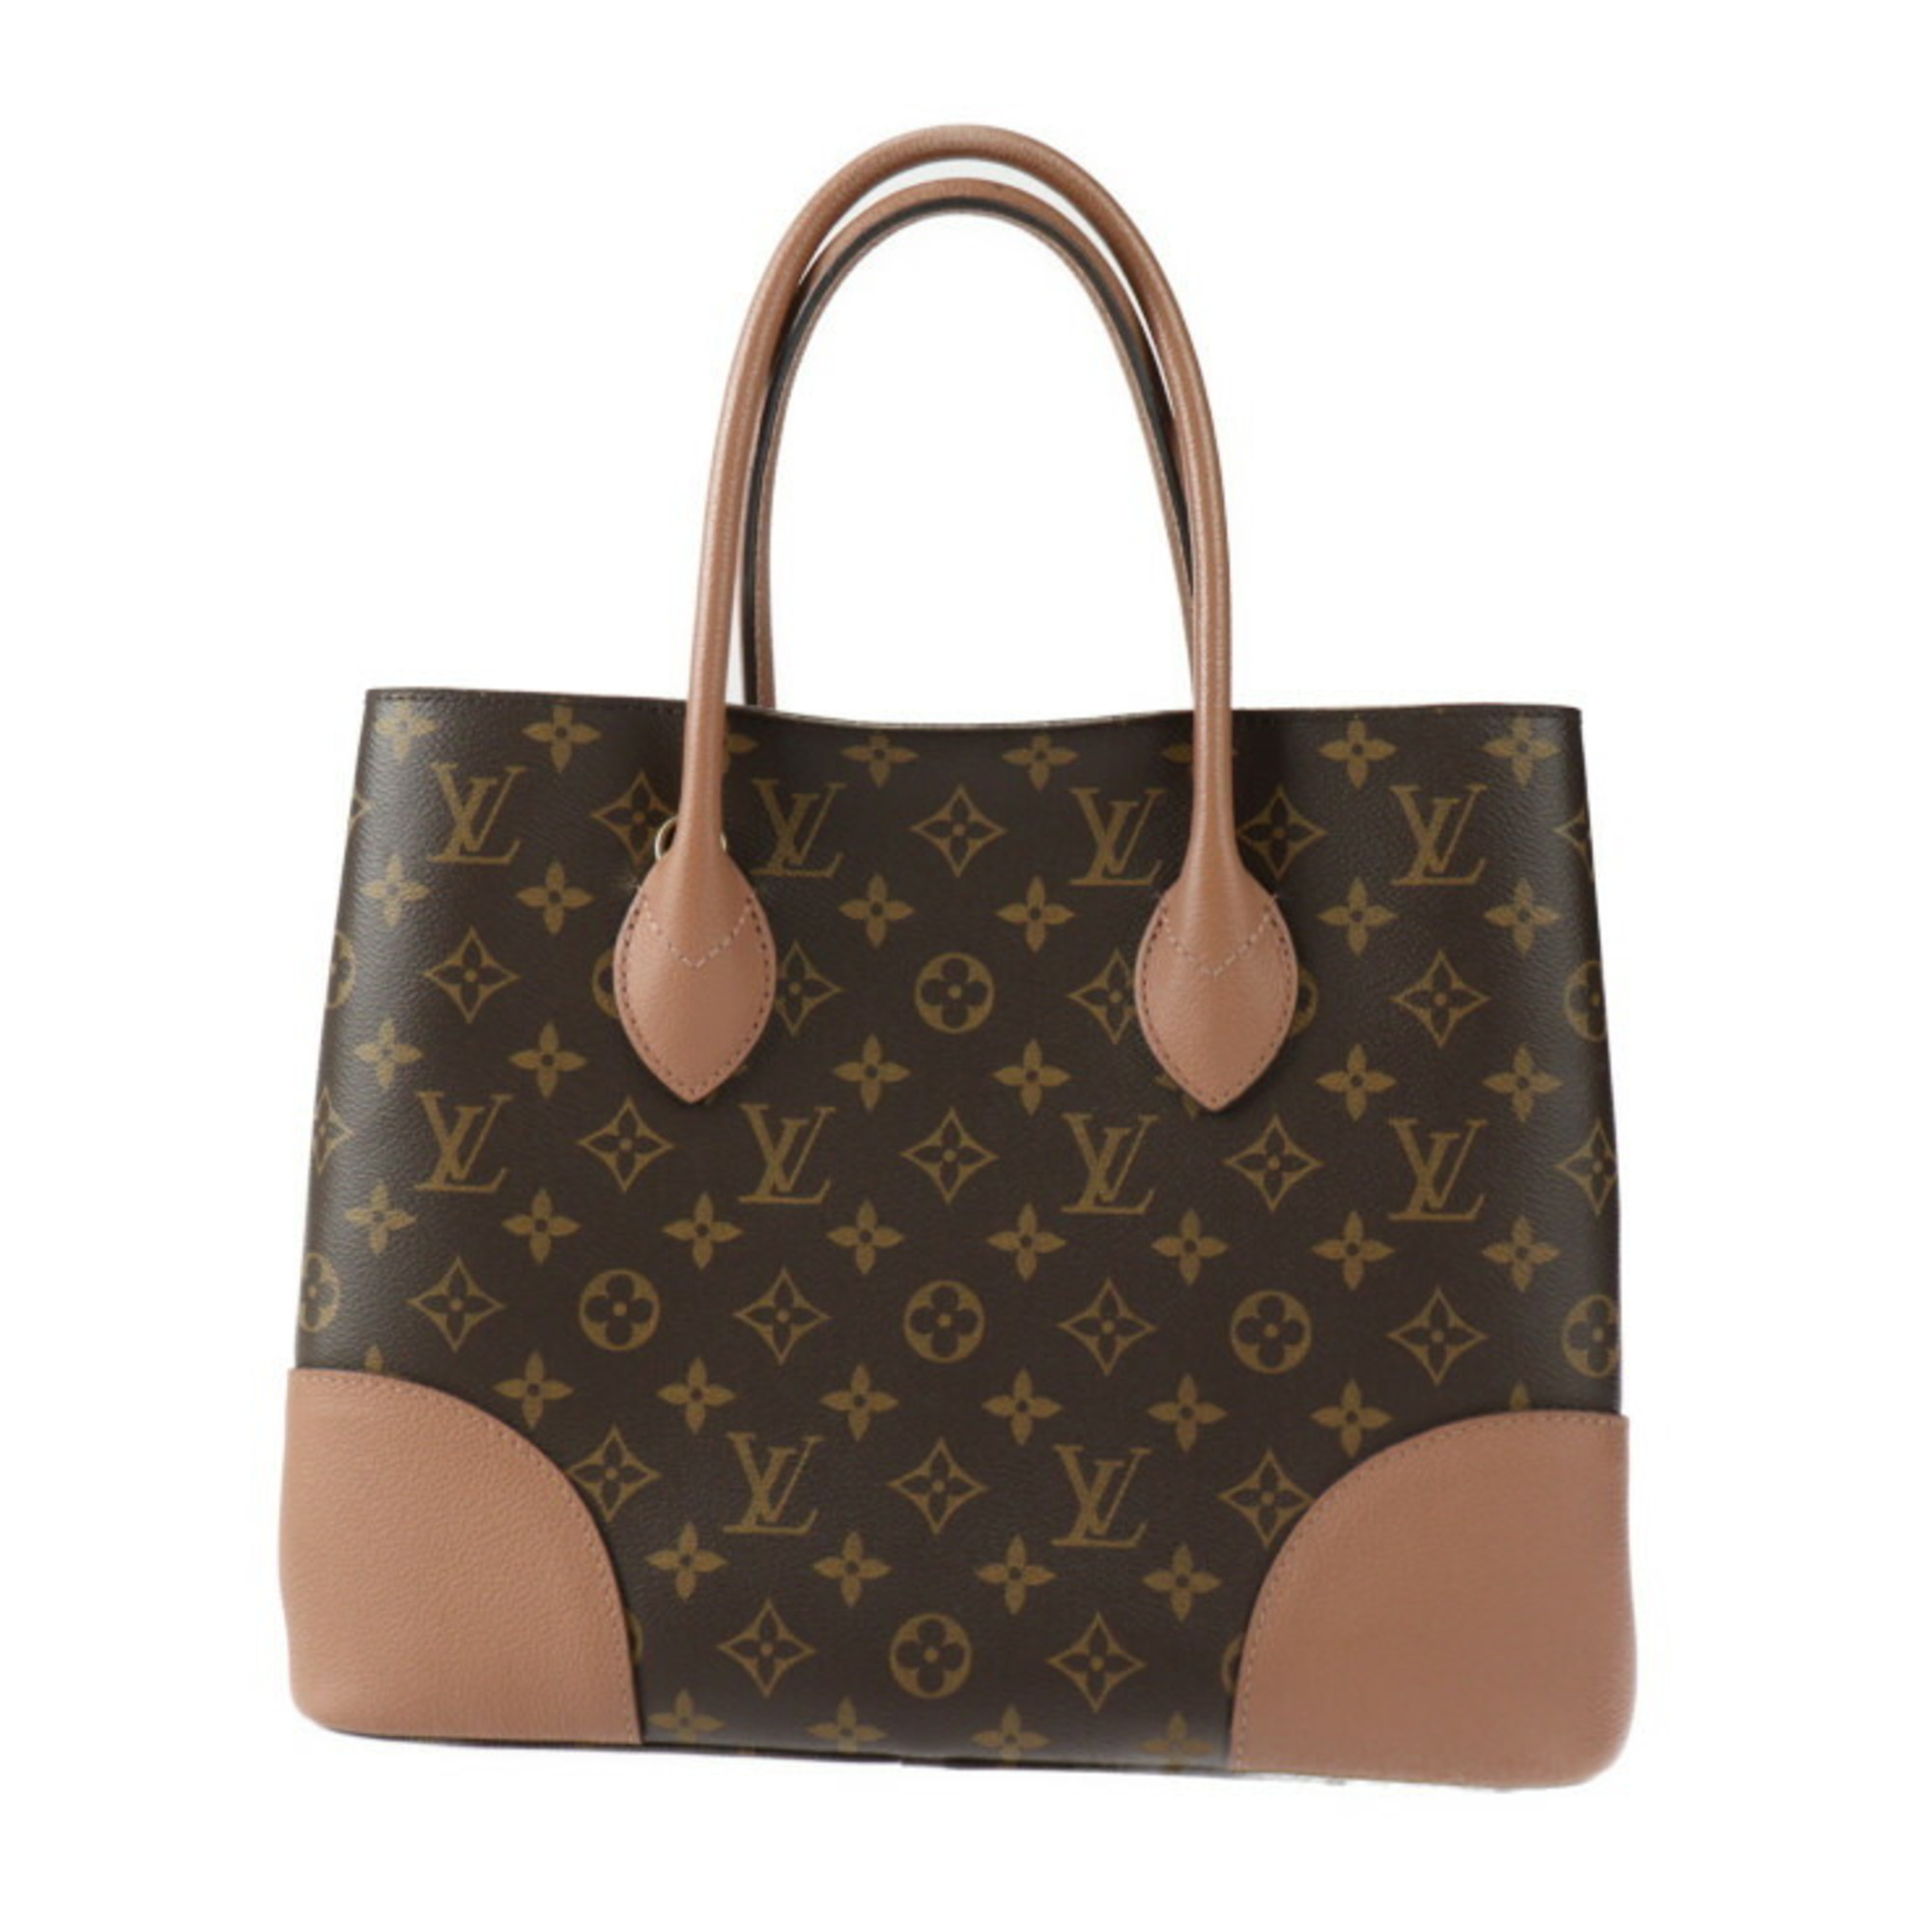 LOUIS VUITTON Louis Vuitton Flandrin Handbag M41597 Monogram Canvas Leather Brown Bois de Rose Shoulder Bag Tote